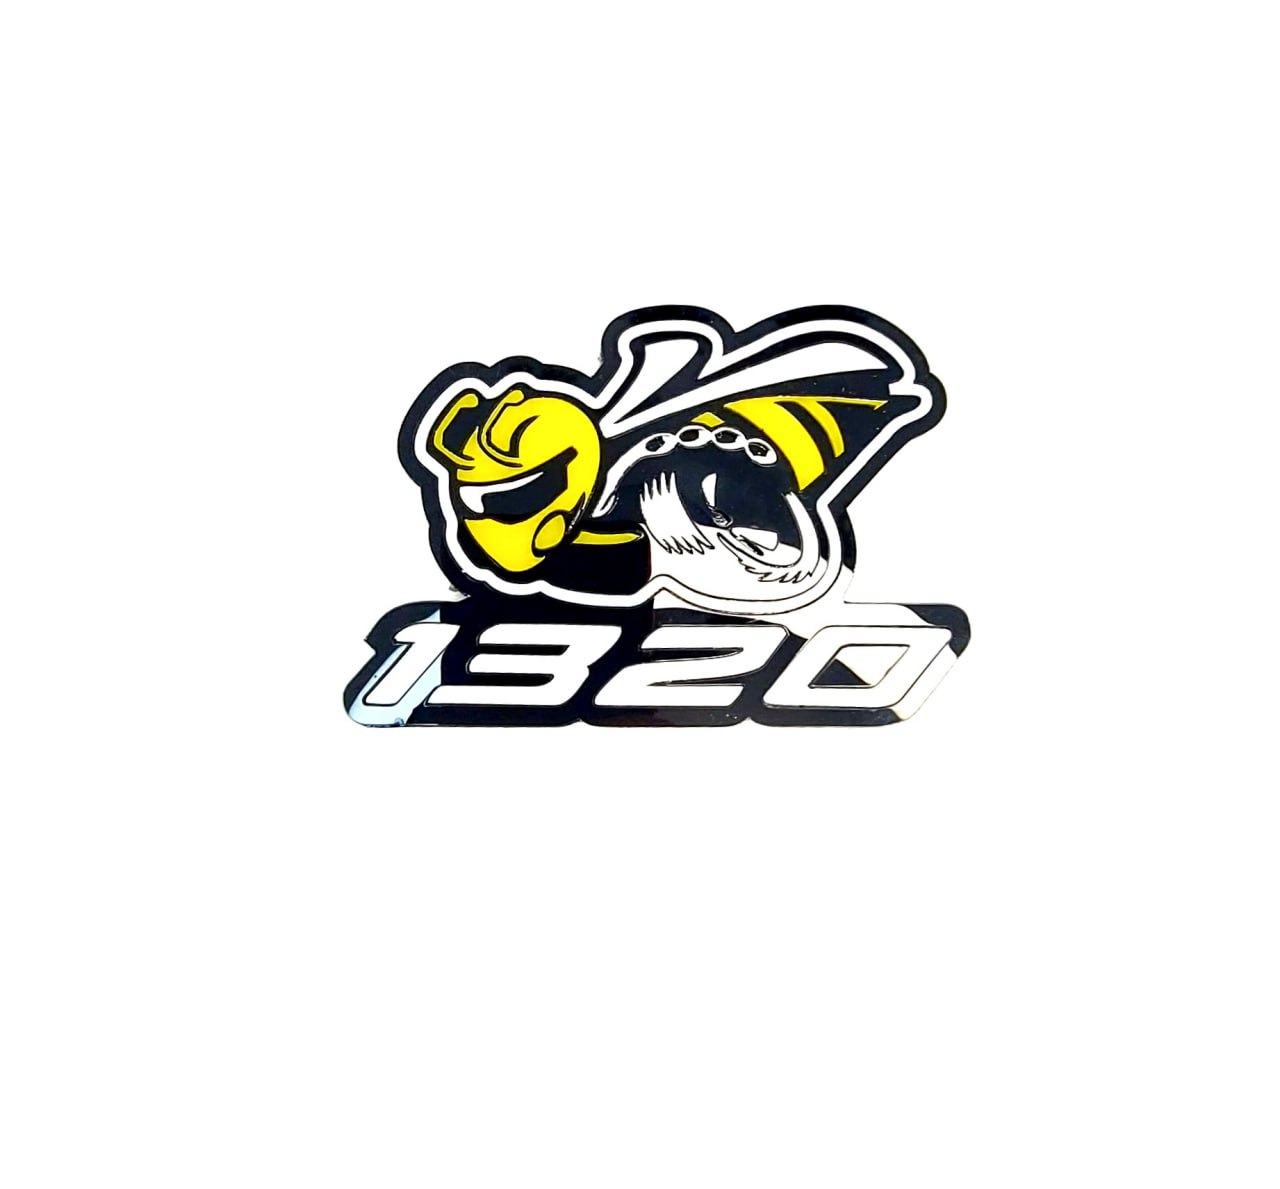 Emblème de calandre DODGE avec logo Scatpack